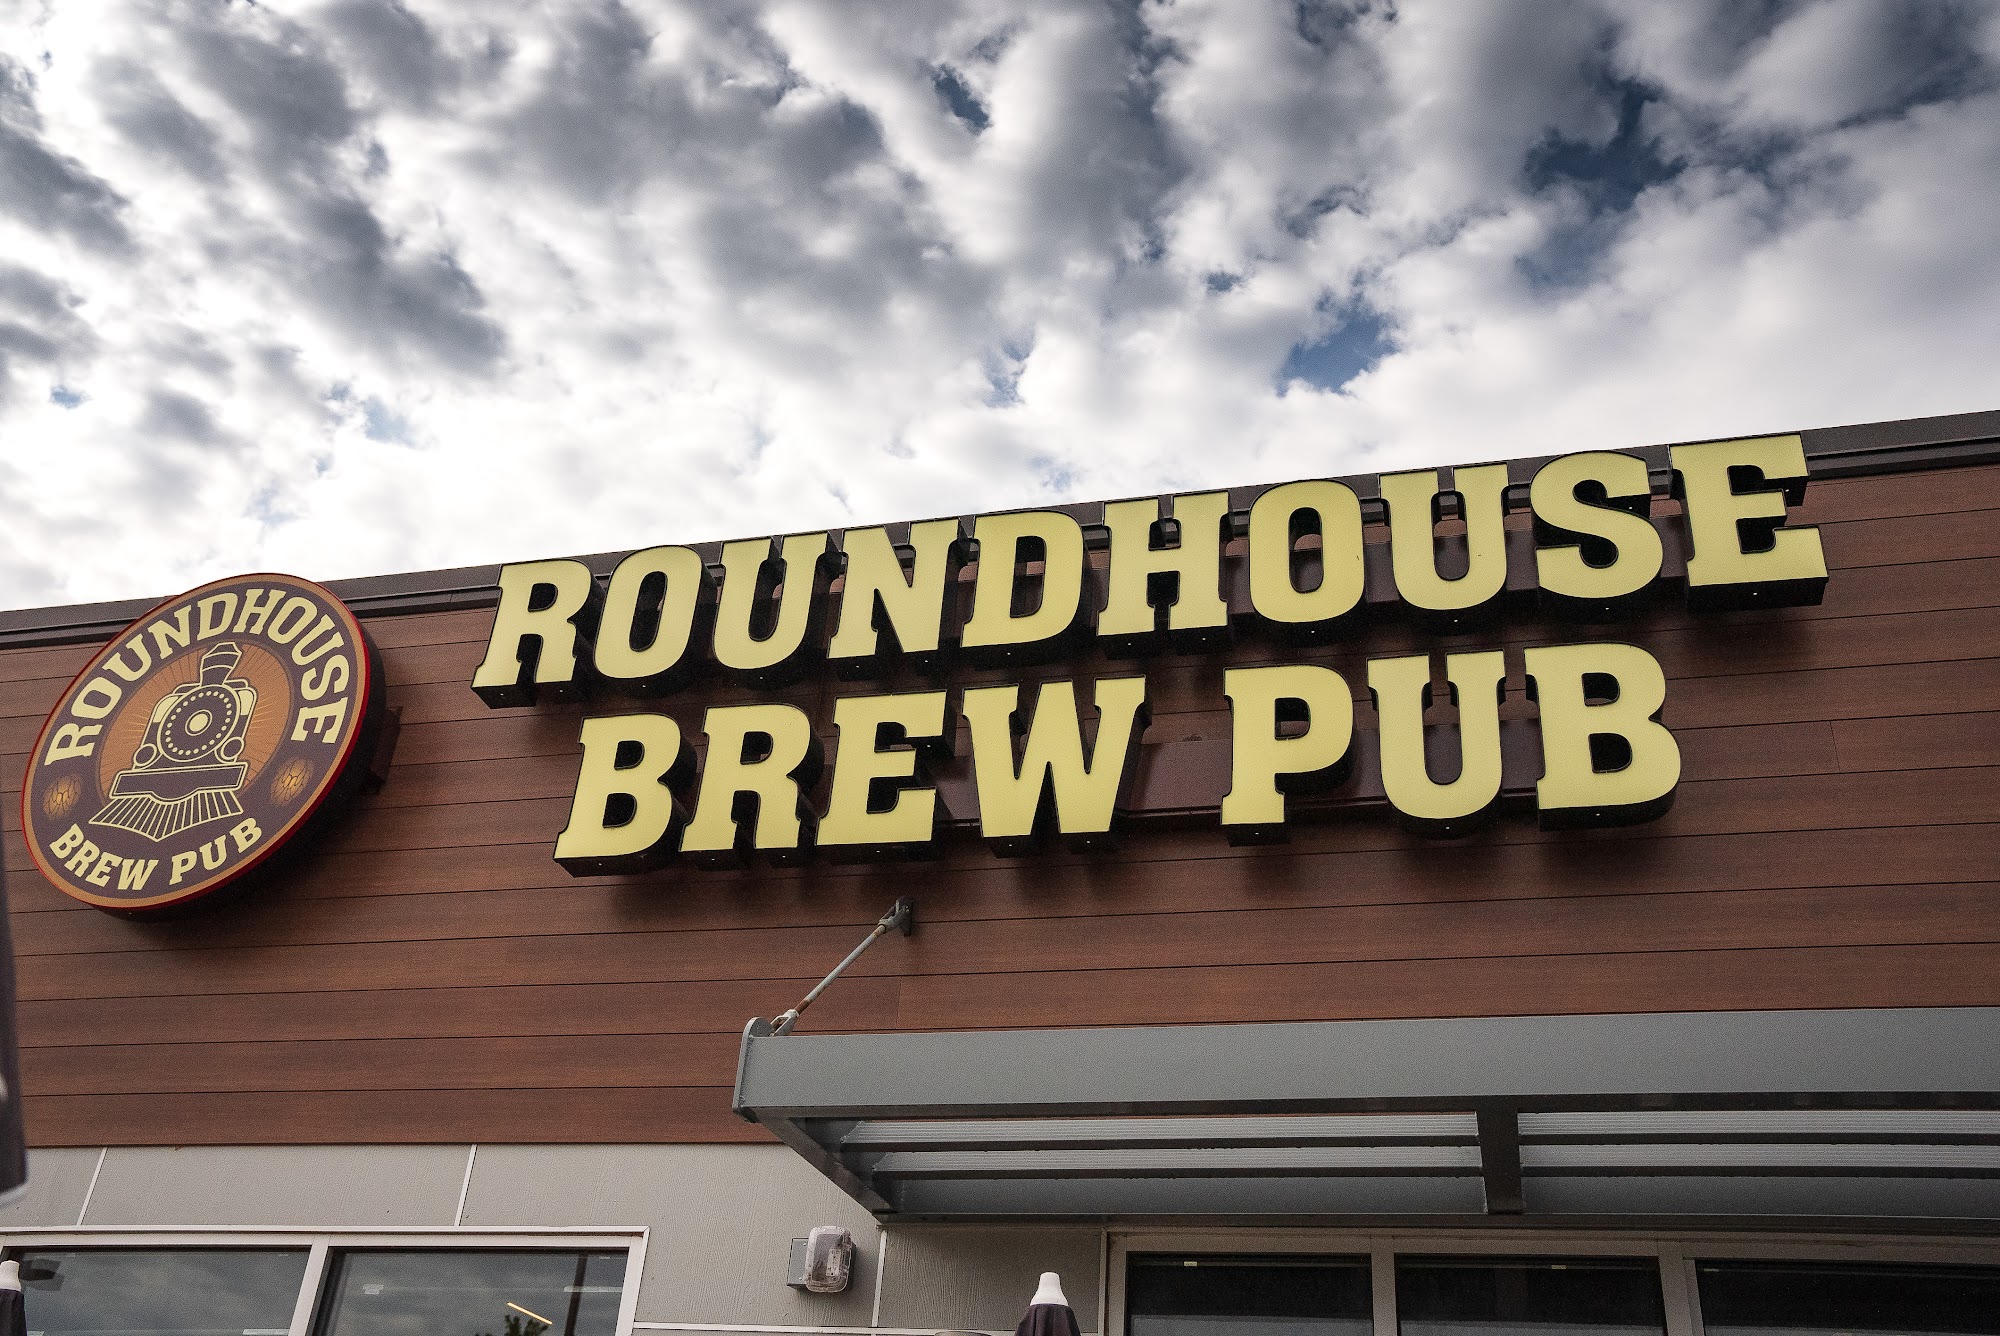 Roundhouse Brew Pub